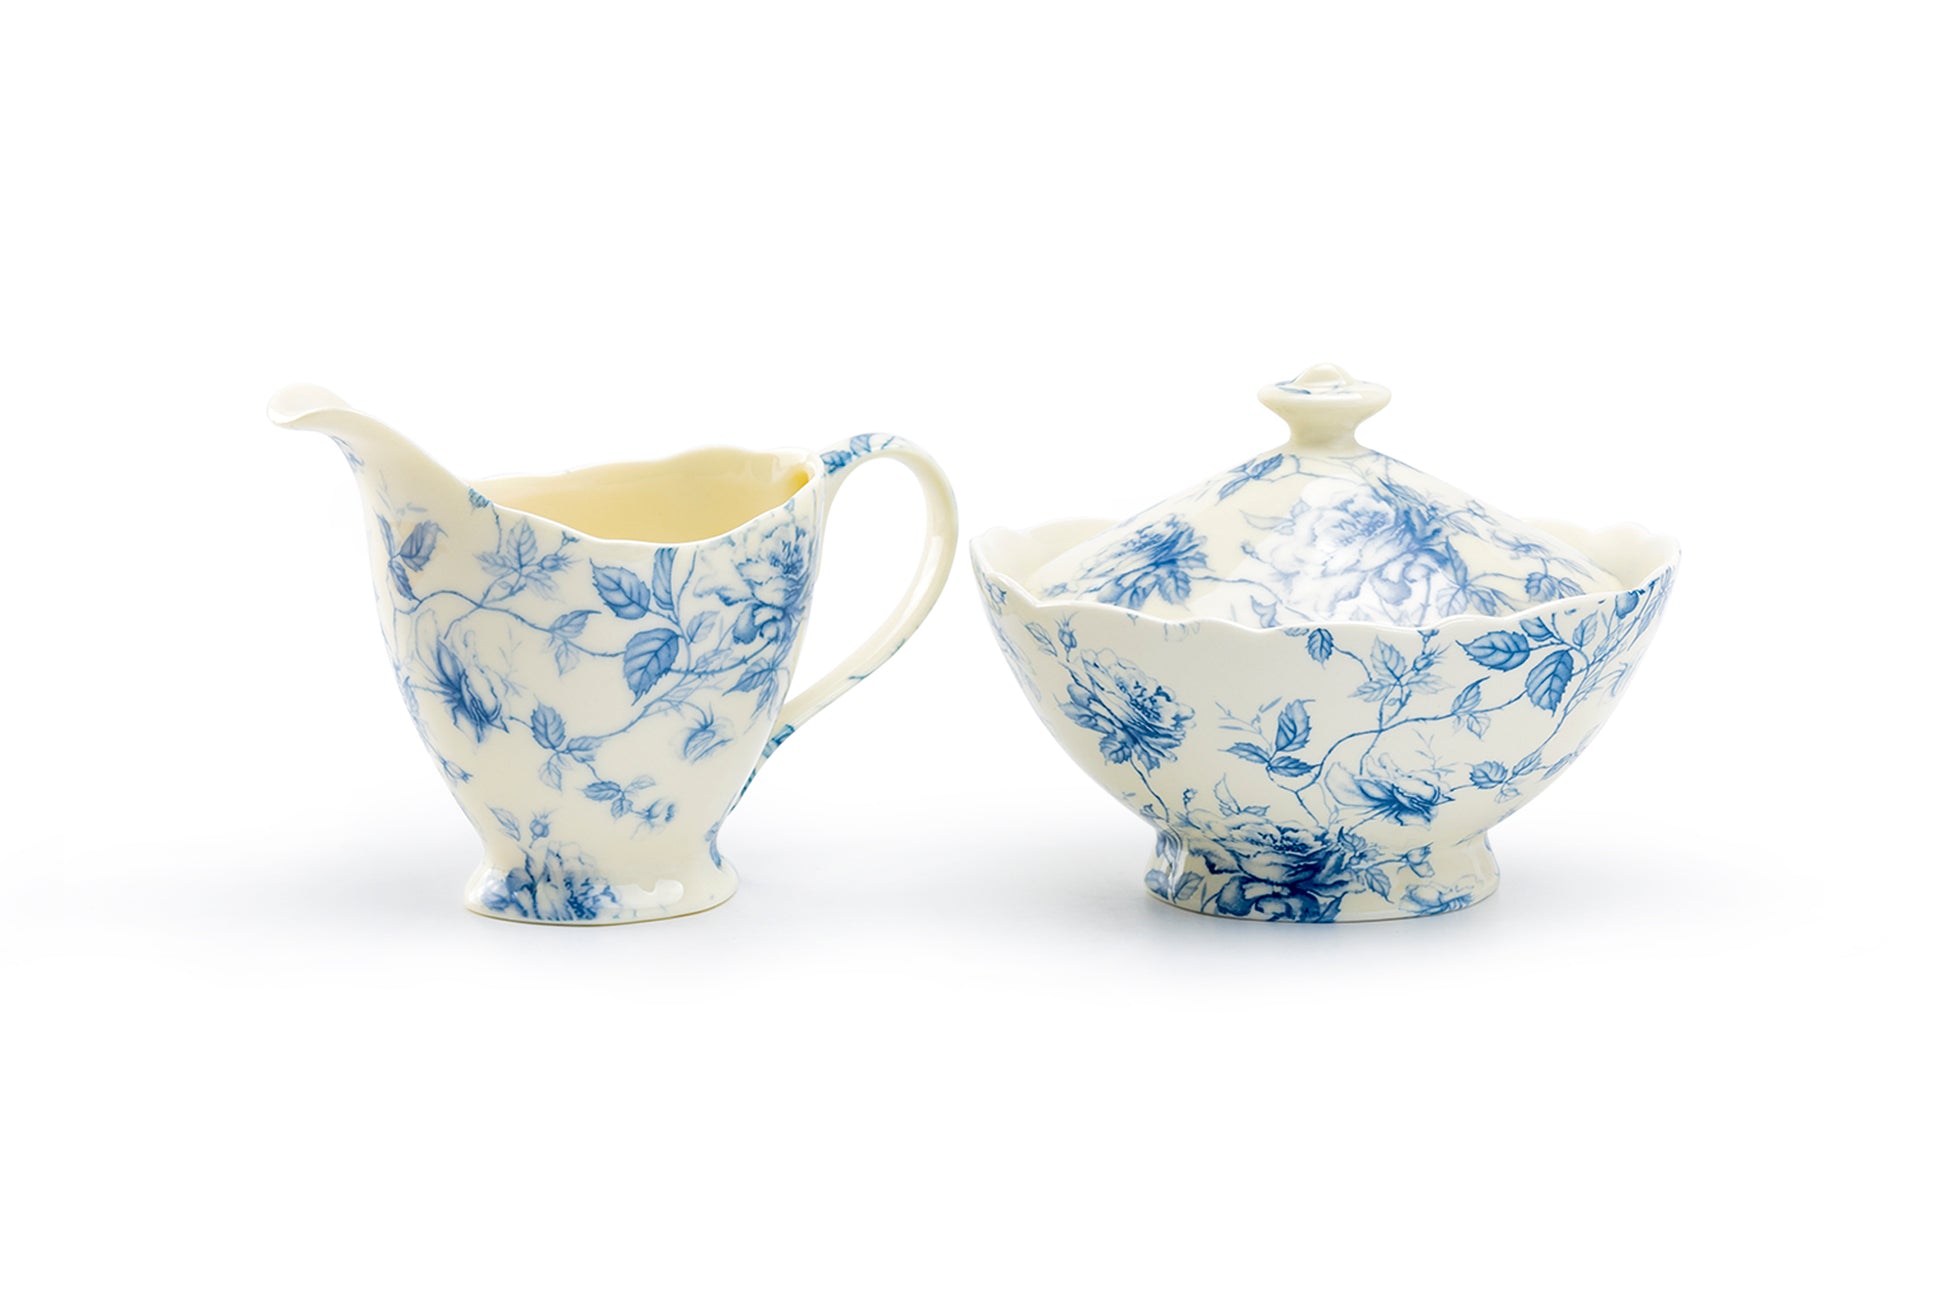 Grace Teaware Blue Rose Toile Fine Porcelain Sugar & Creamer Set